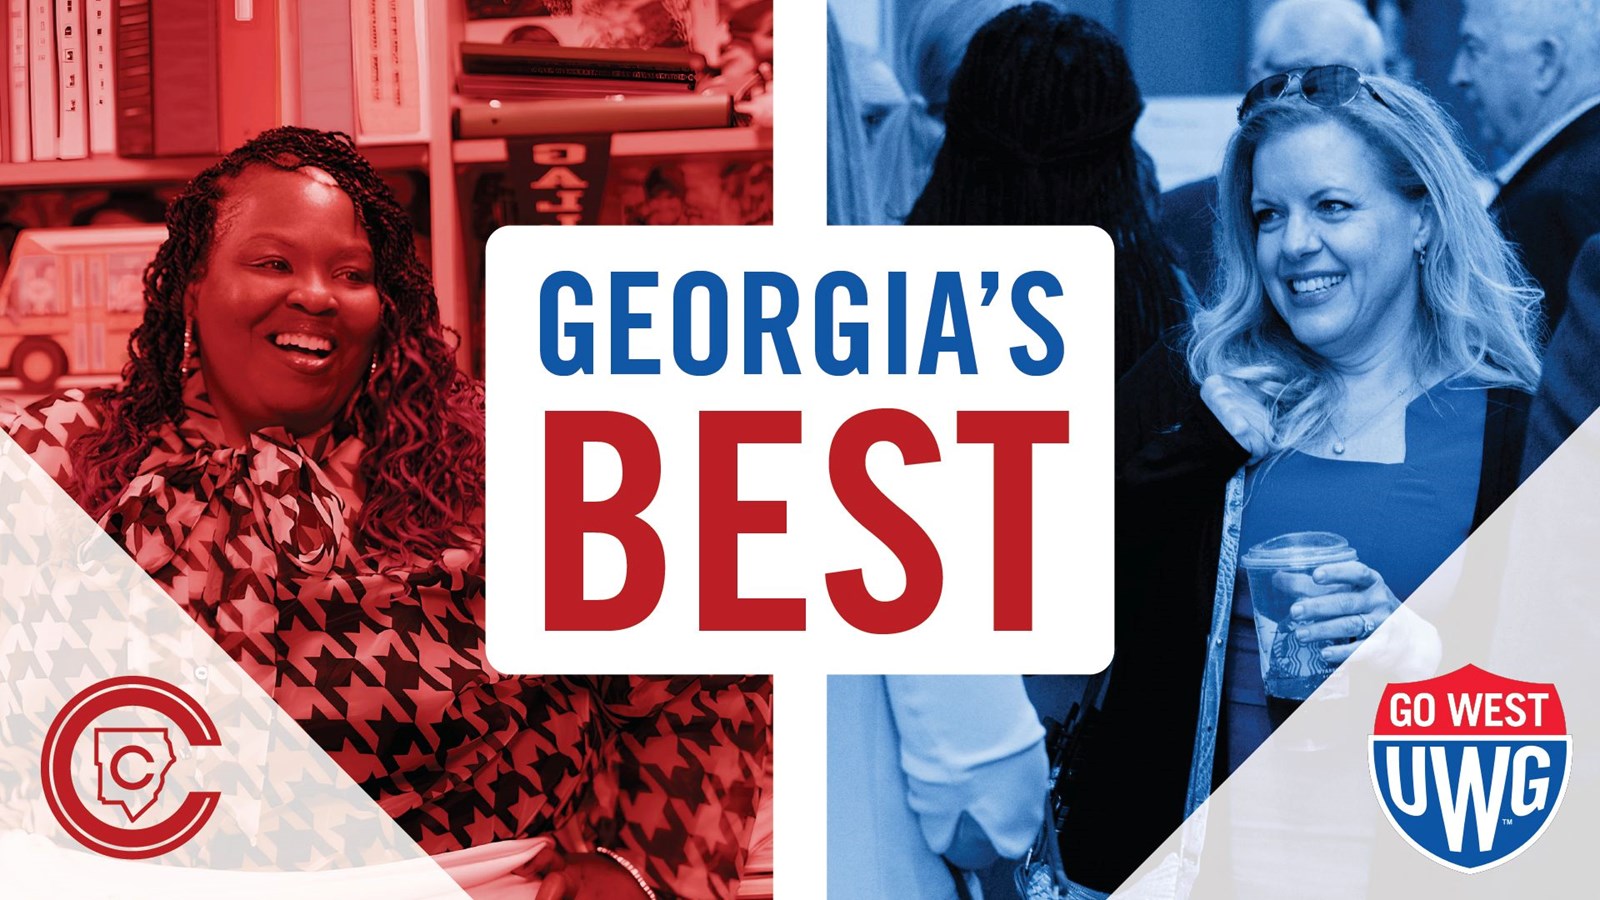 Georgia's BEST